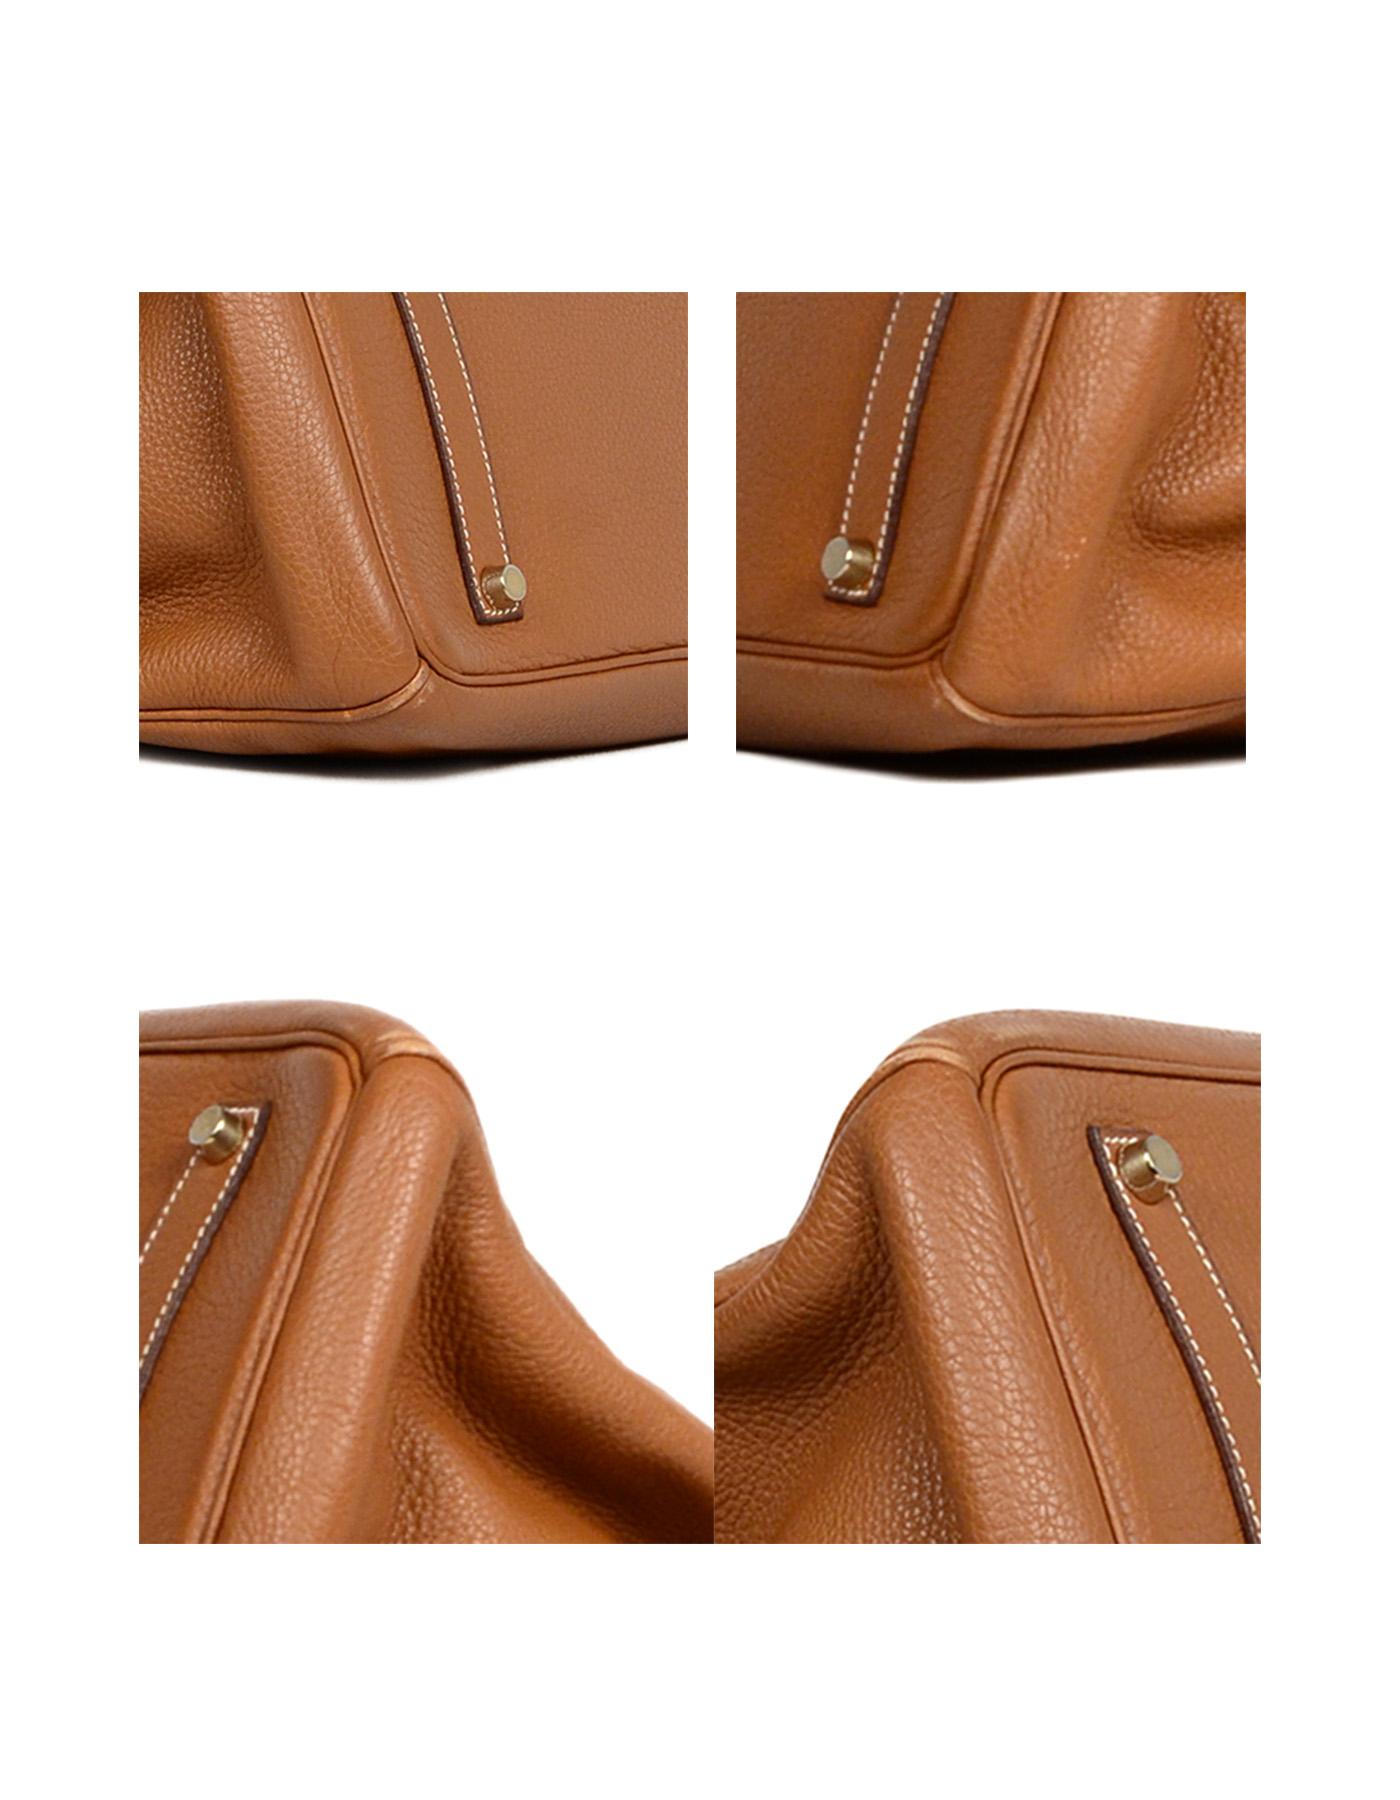 Hermes Togo Leather Tan Gold 35cm Birkin Bag GHW 1